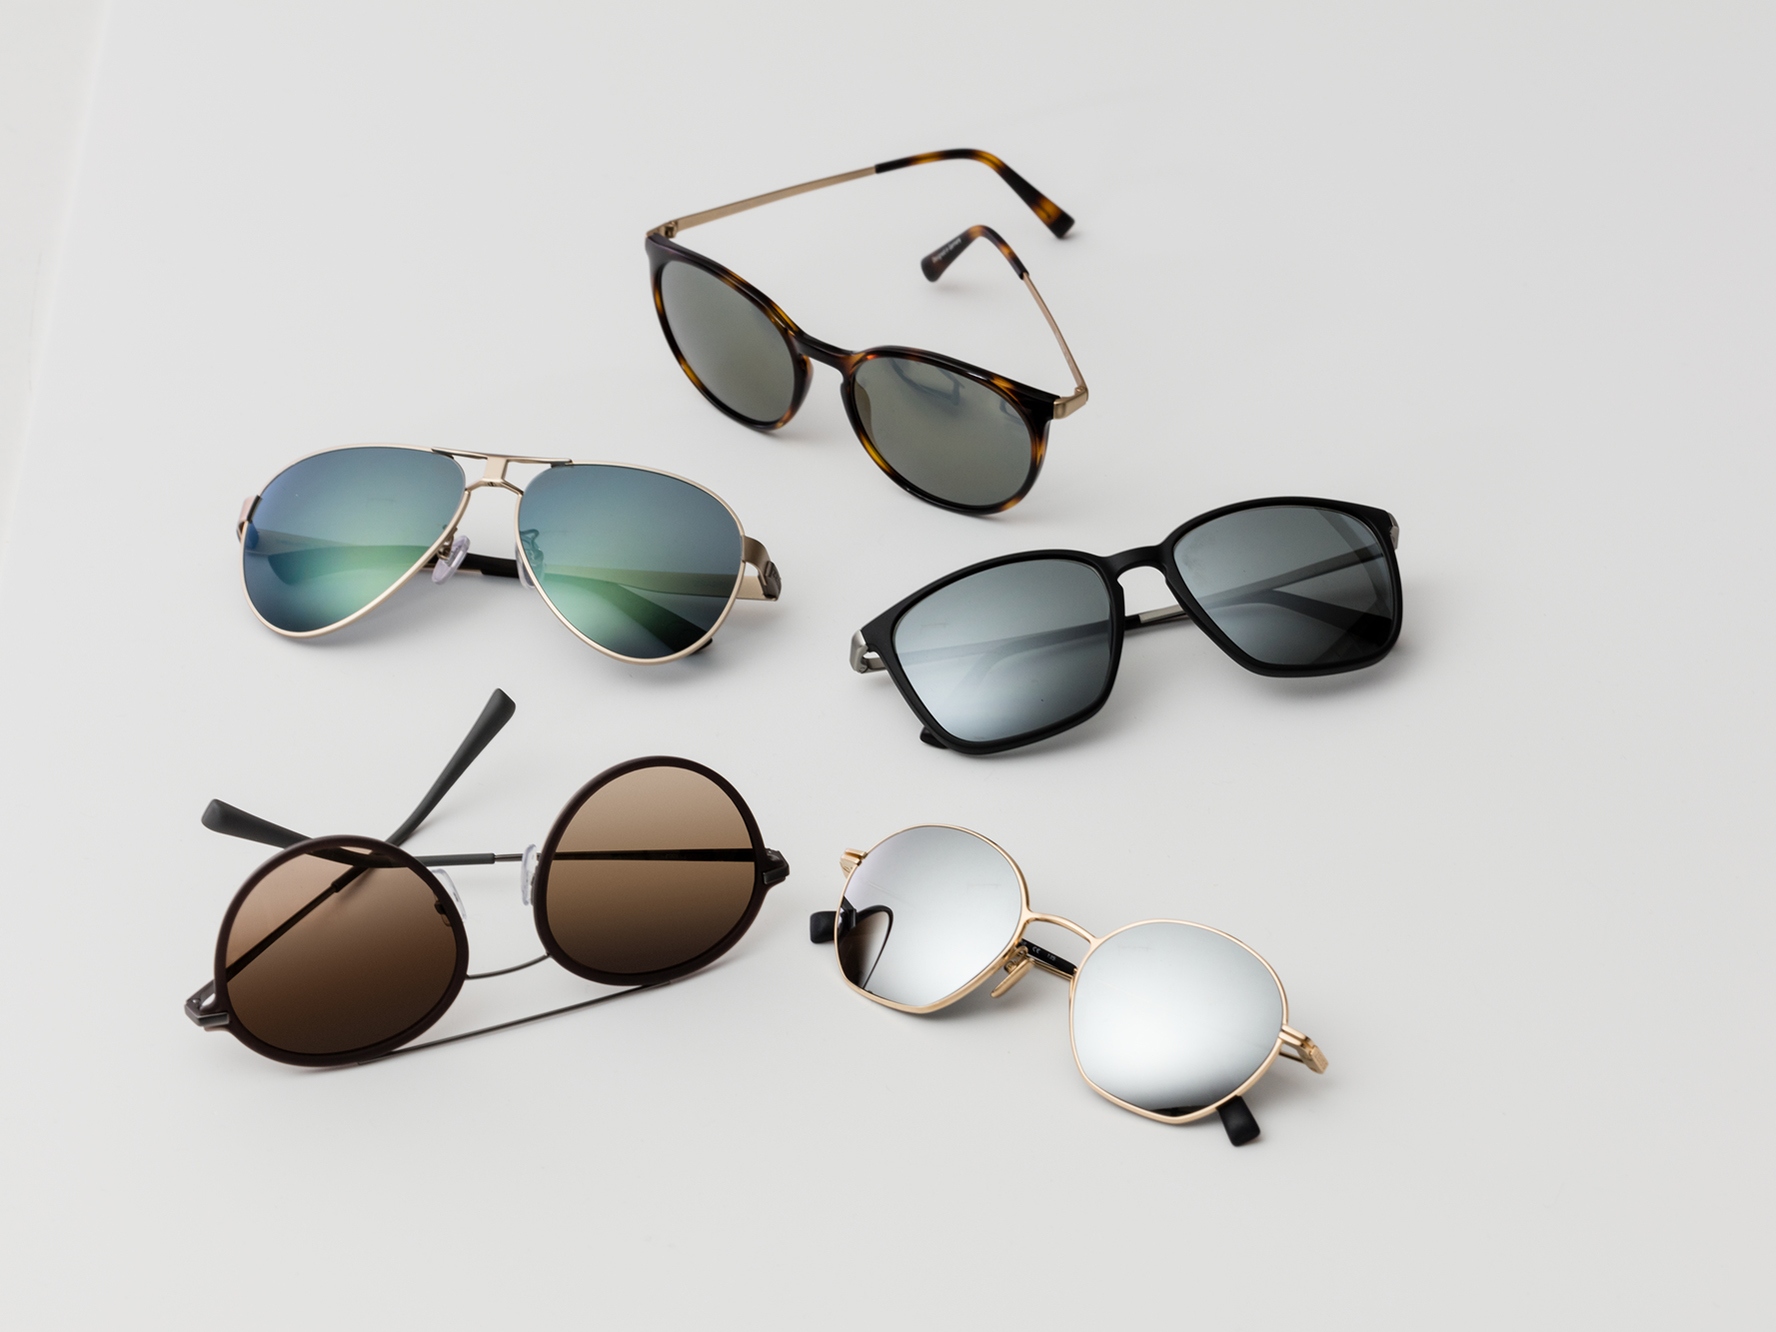 Öt pár napszemüveg a közepes és erős fényviszonyok között ideális klasszikus napvédő színezésekkel.